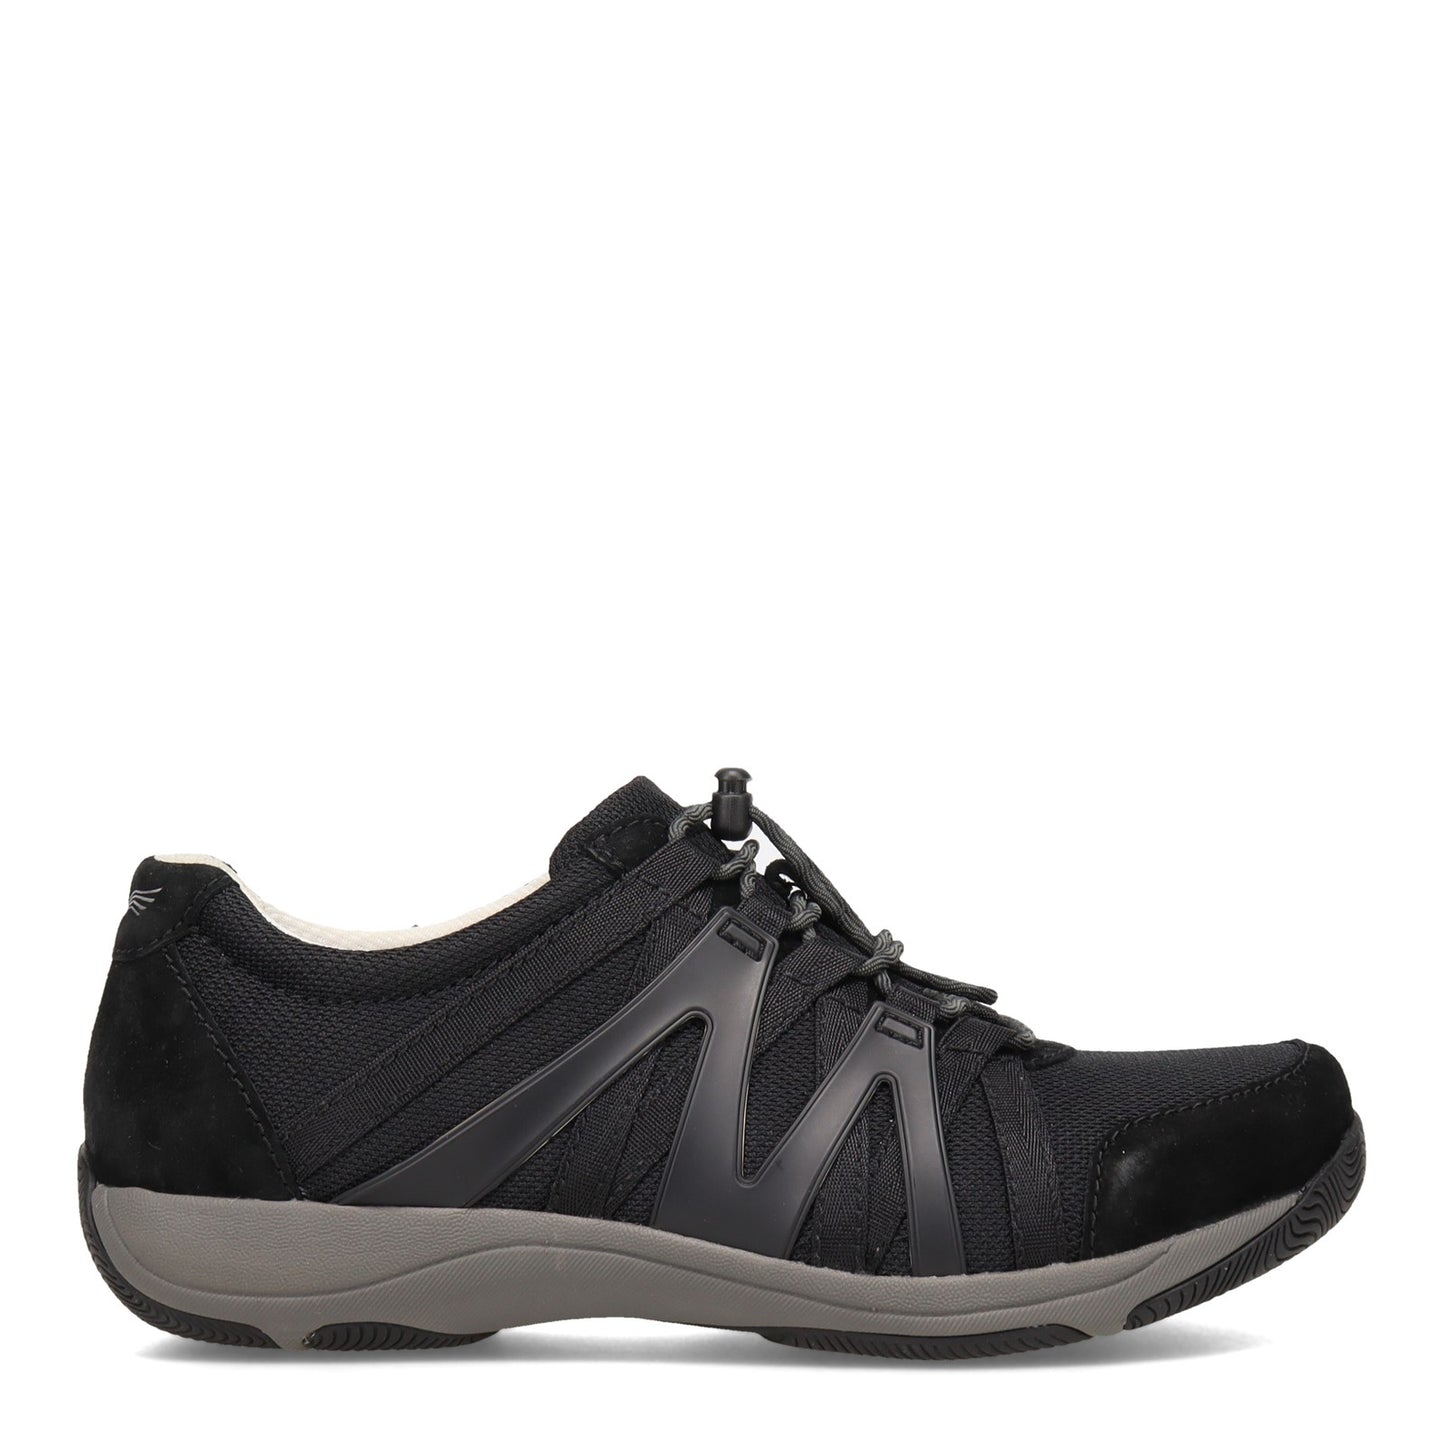 Peltz Shoes  Women's Dansko Henriette Sneaker - Wide Width Black/Grey 4862-360295